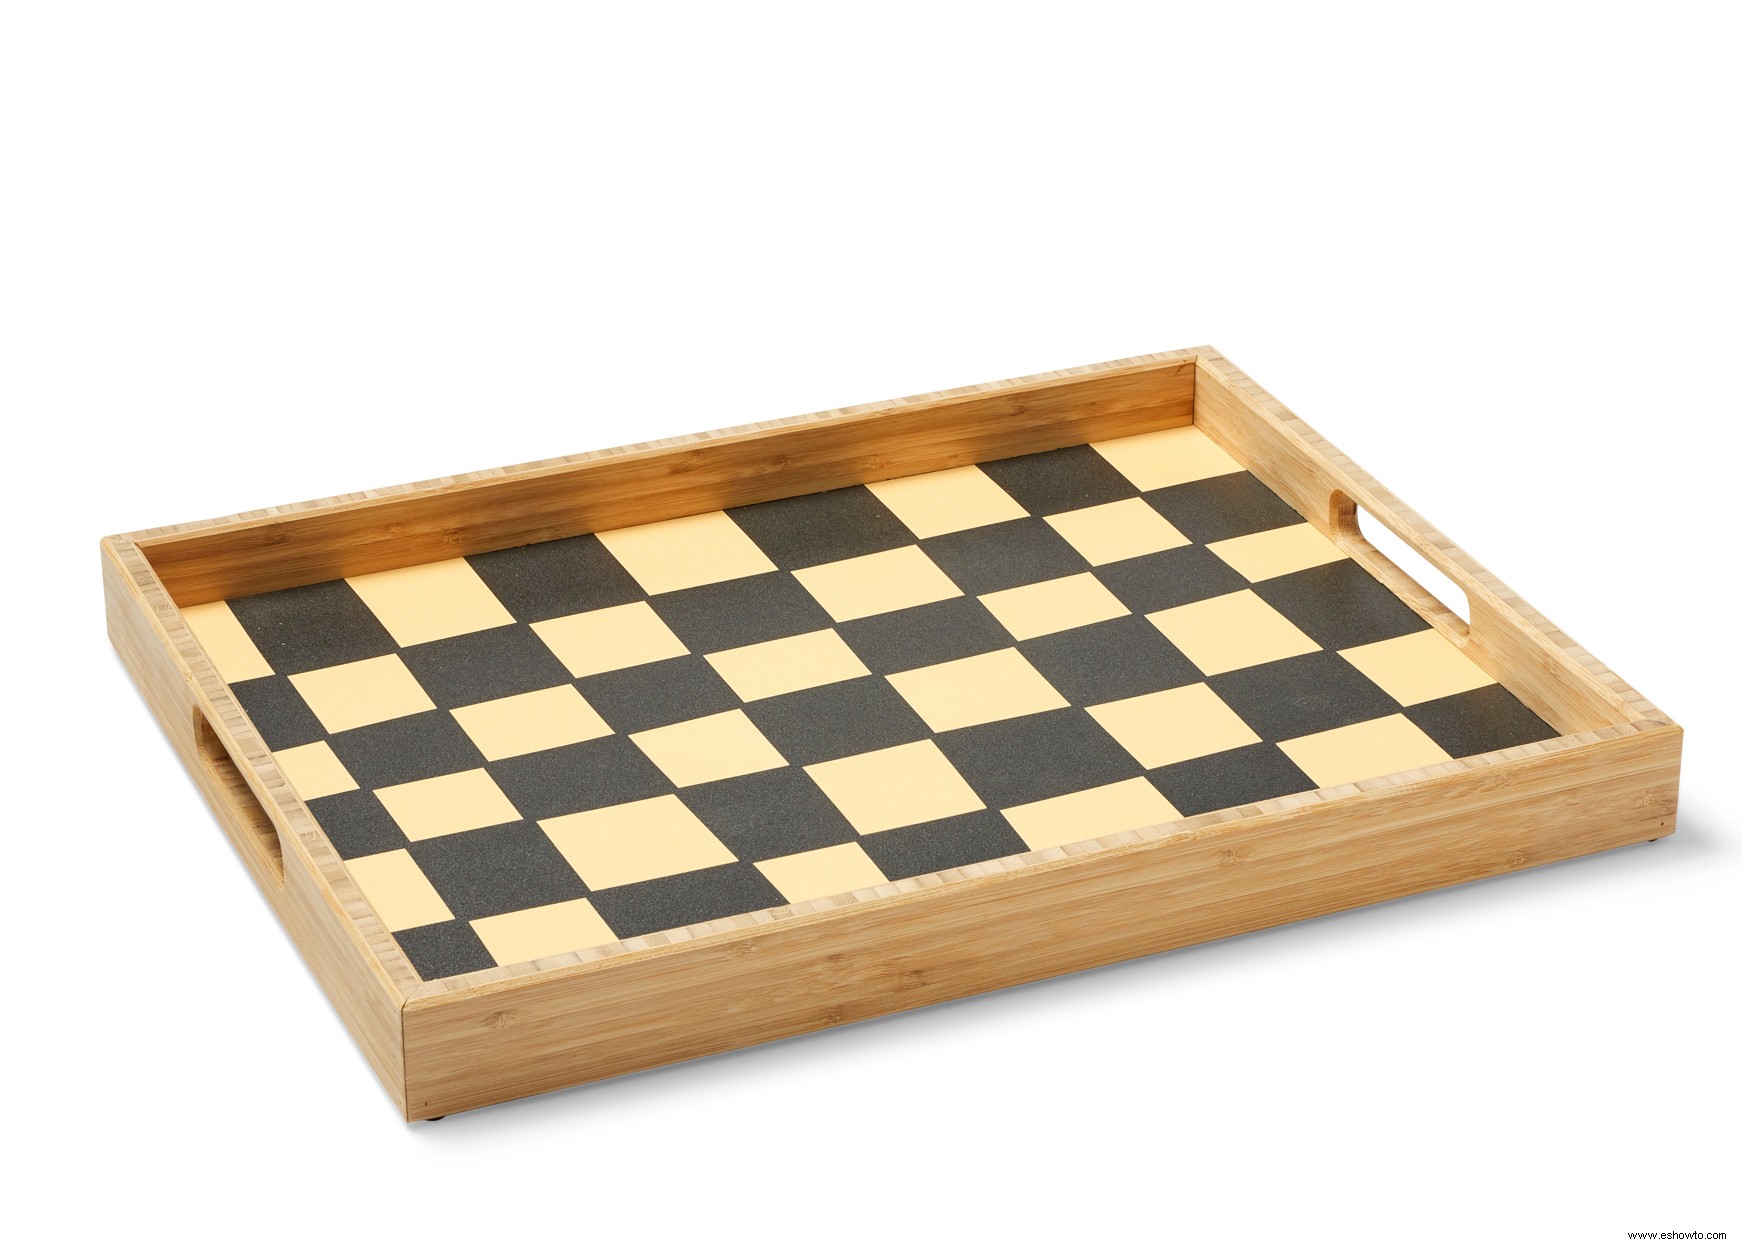 12 maneras de decorar con patrones de tablero de ajedrez para una apariencia audaz pero clásica 